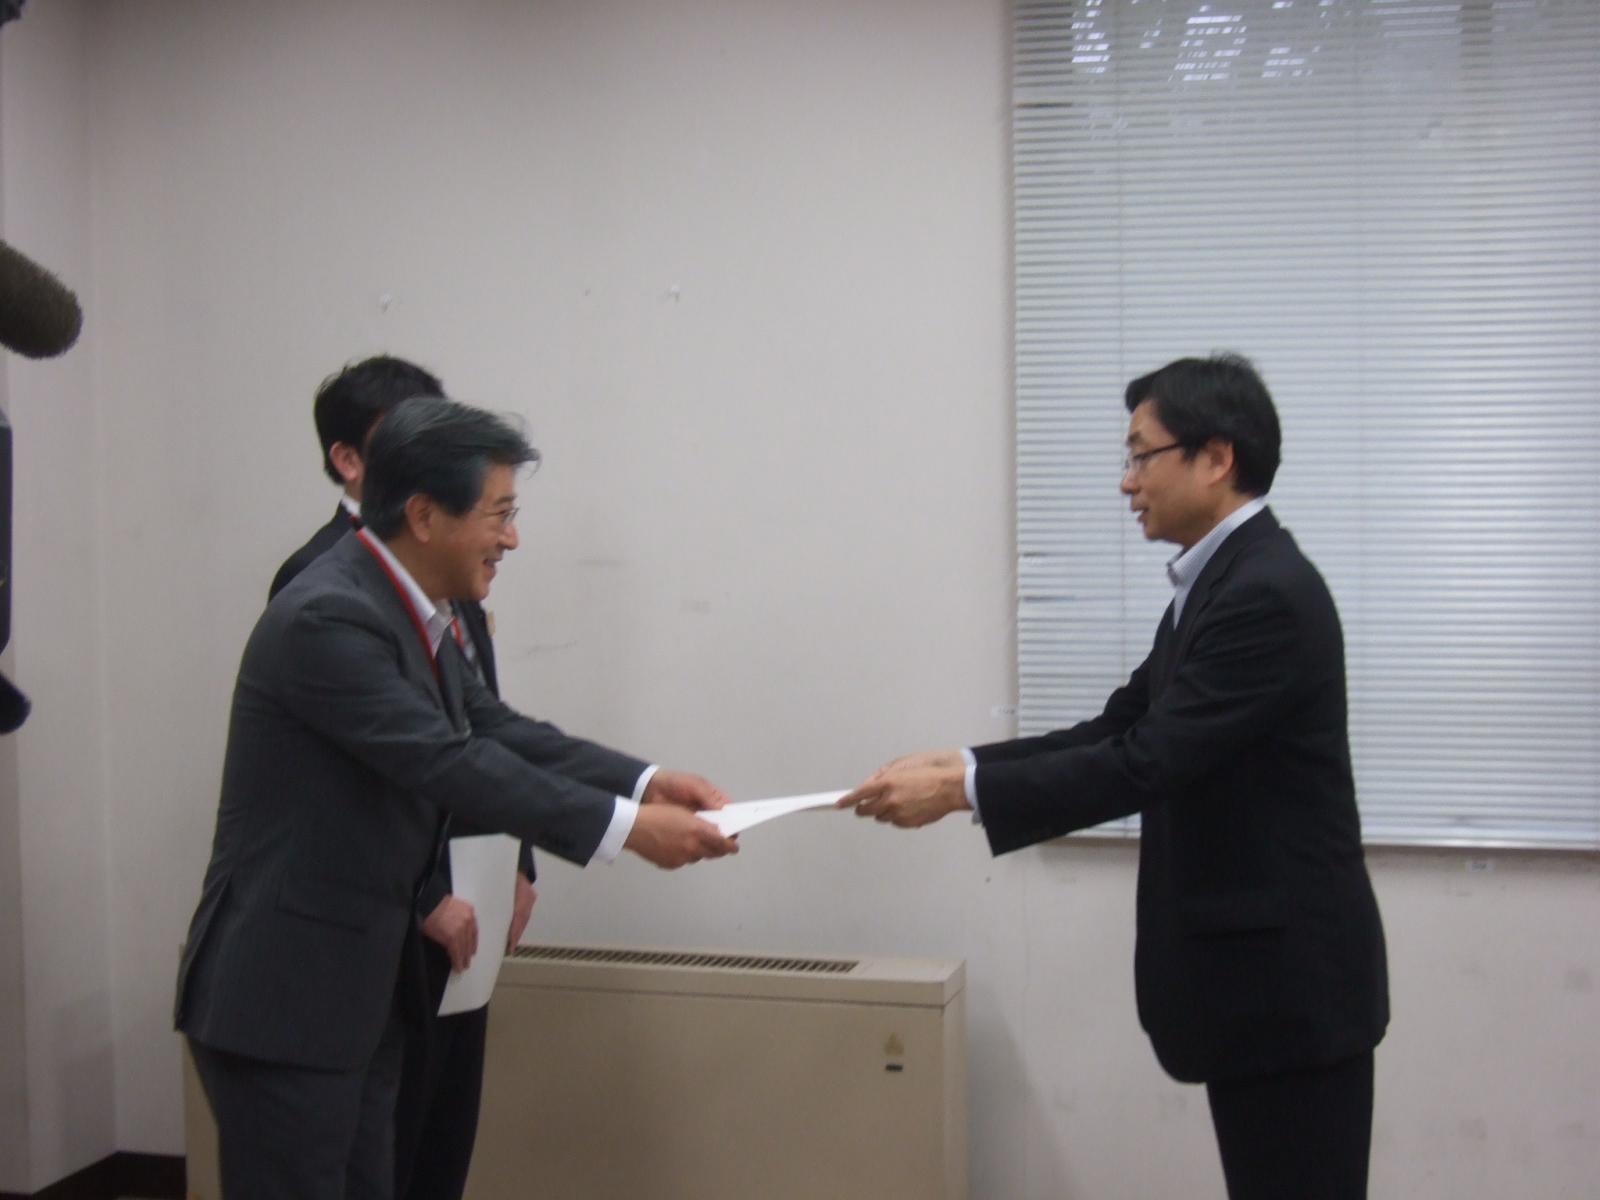 小沢市長が左側の男性と向かい合って立ち笑顔で連結許可書の交付を受けている様子の写真